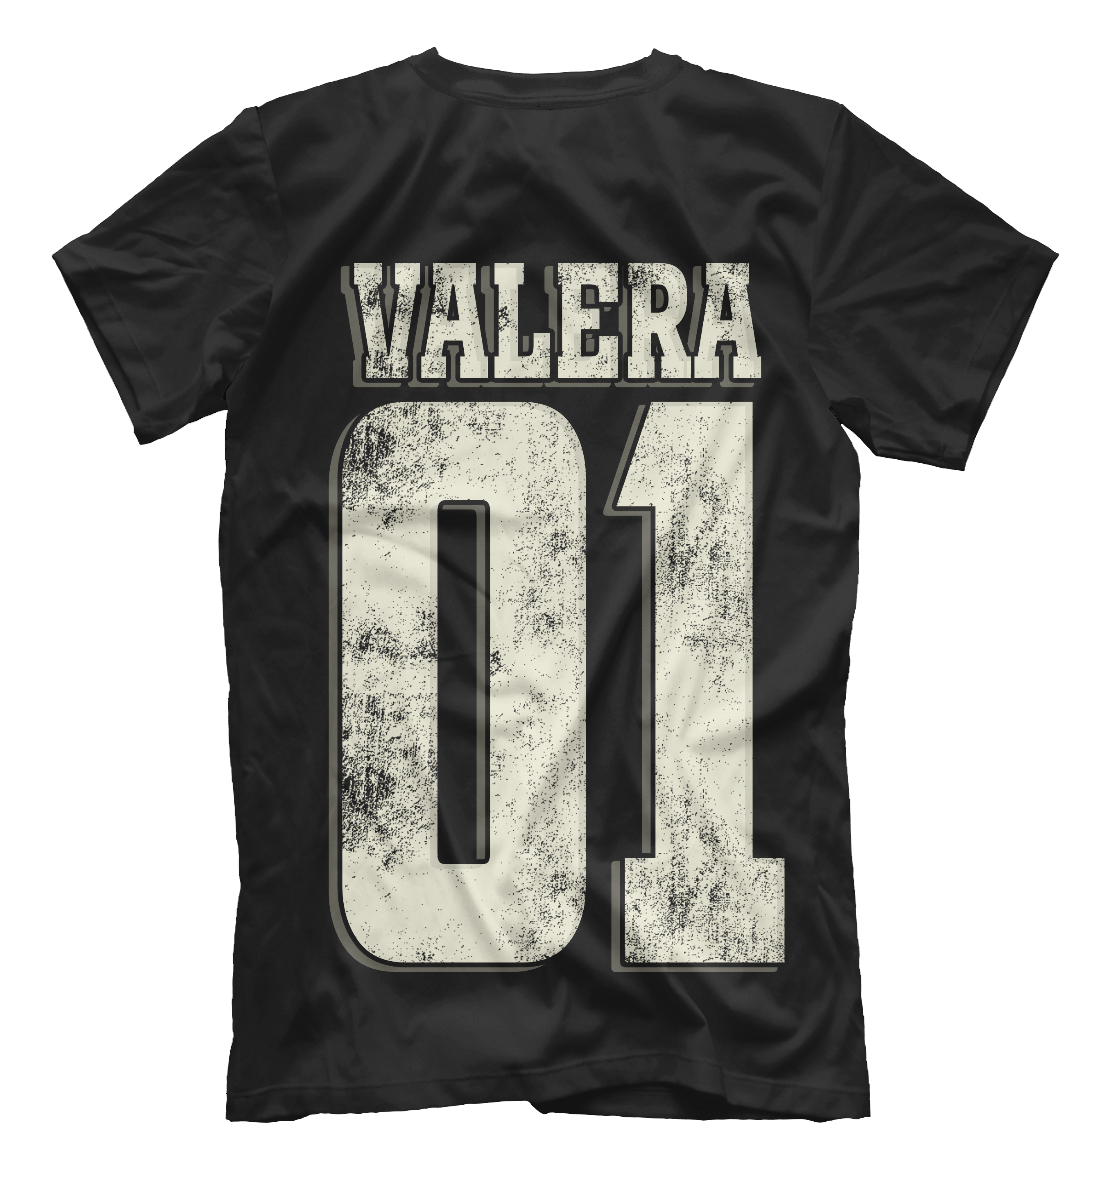 Мужская футболка с принтом Валера 01  - фото 2-спина